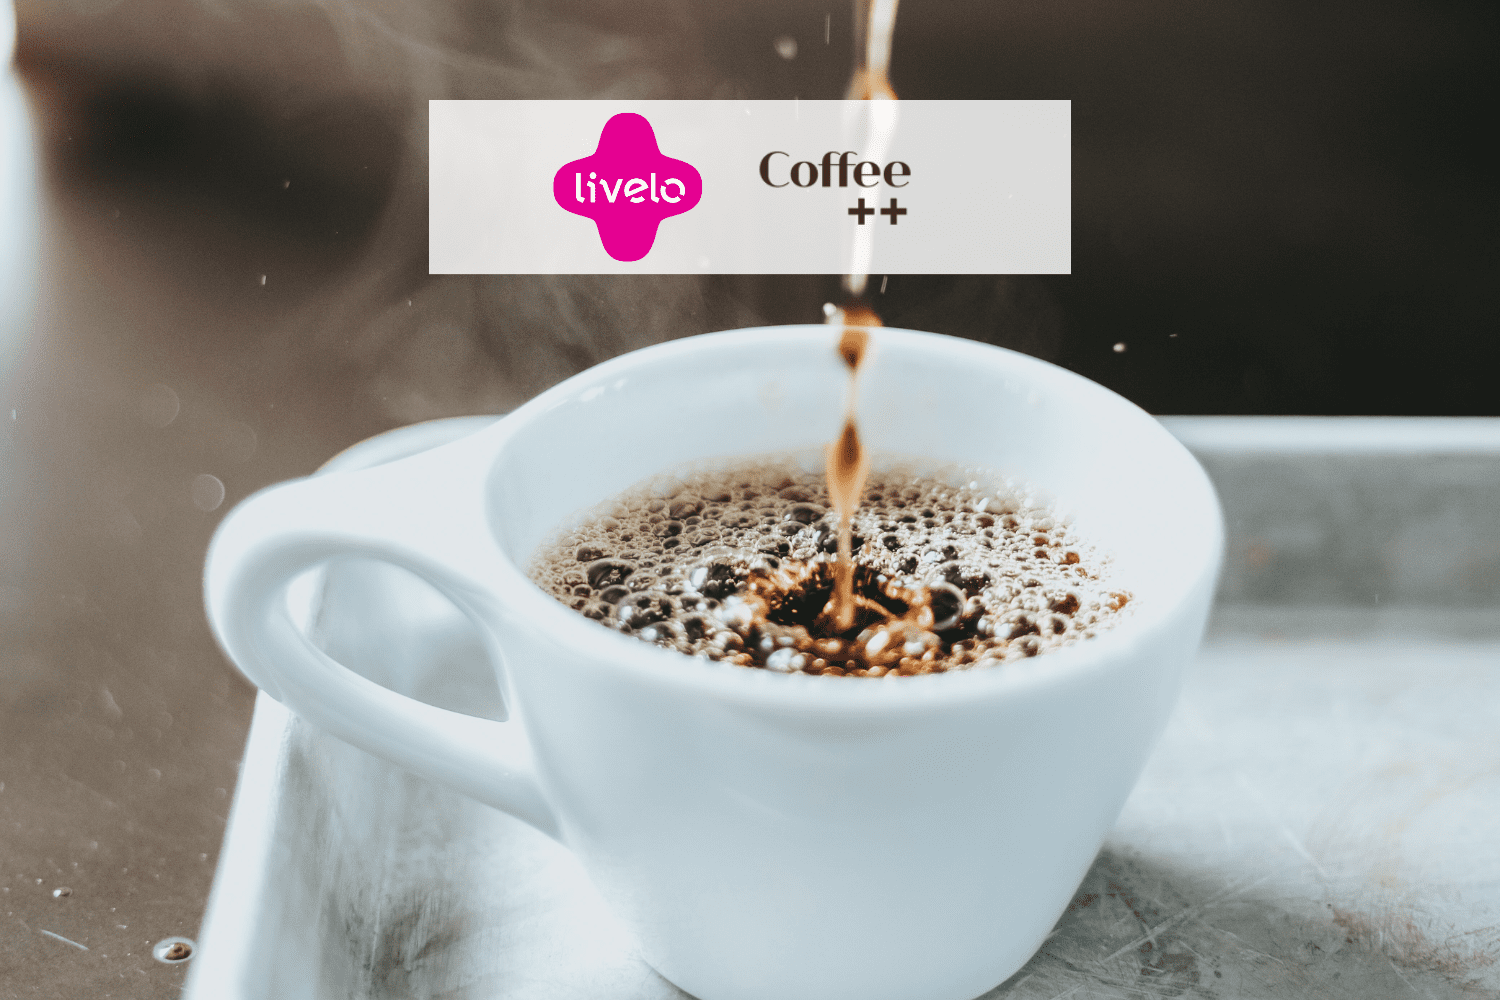 xícara de café servida com logo Livelo e Coffee++ 10 pontos Livelo